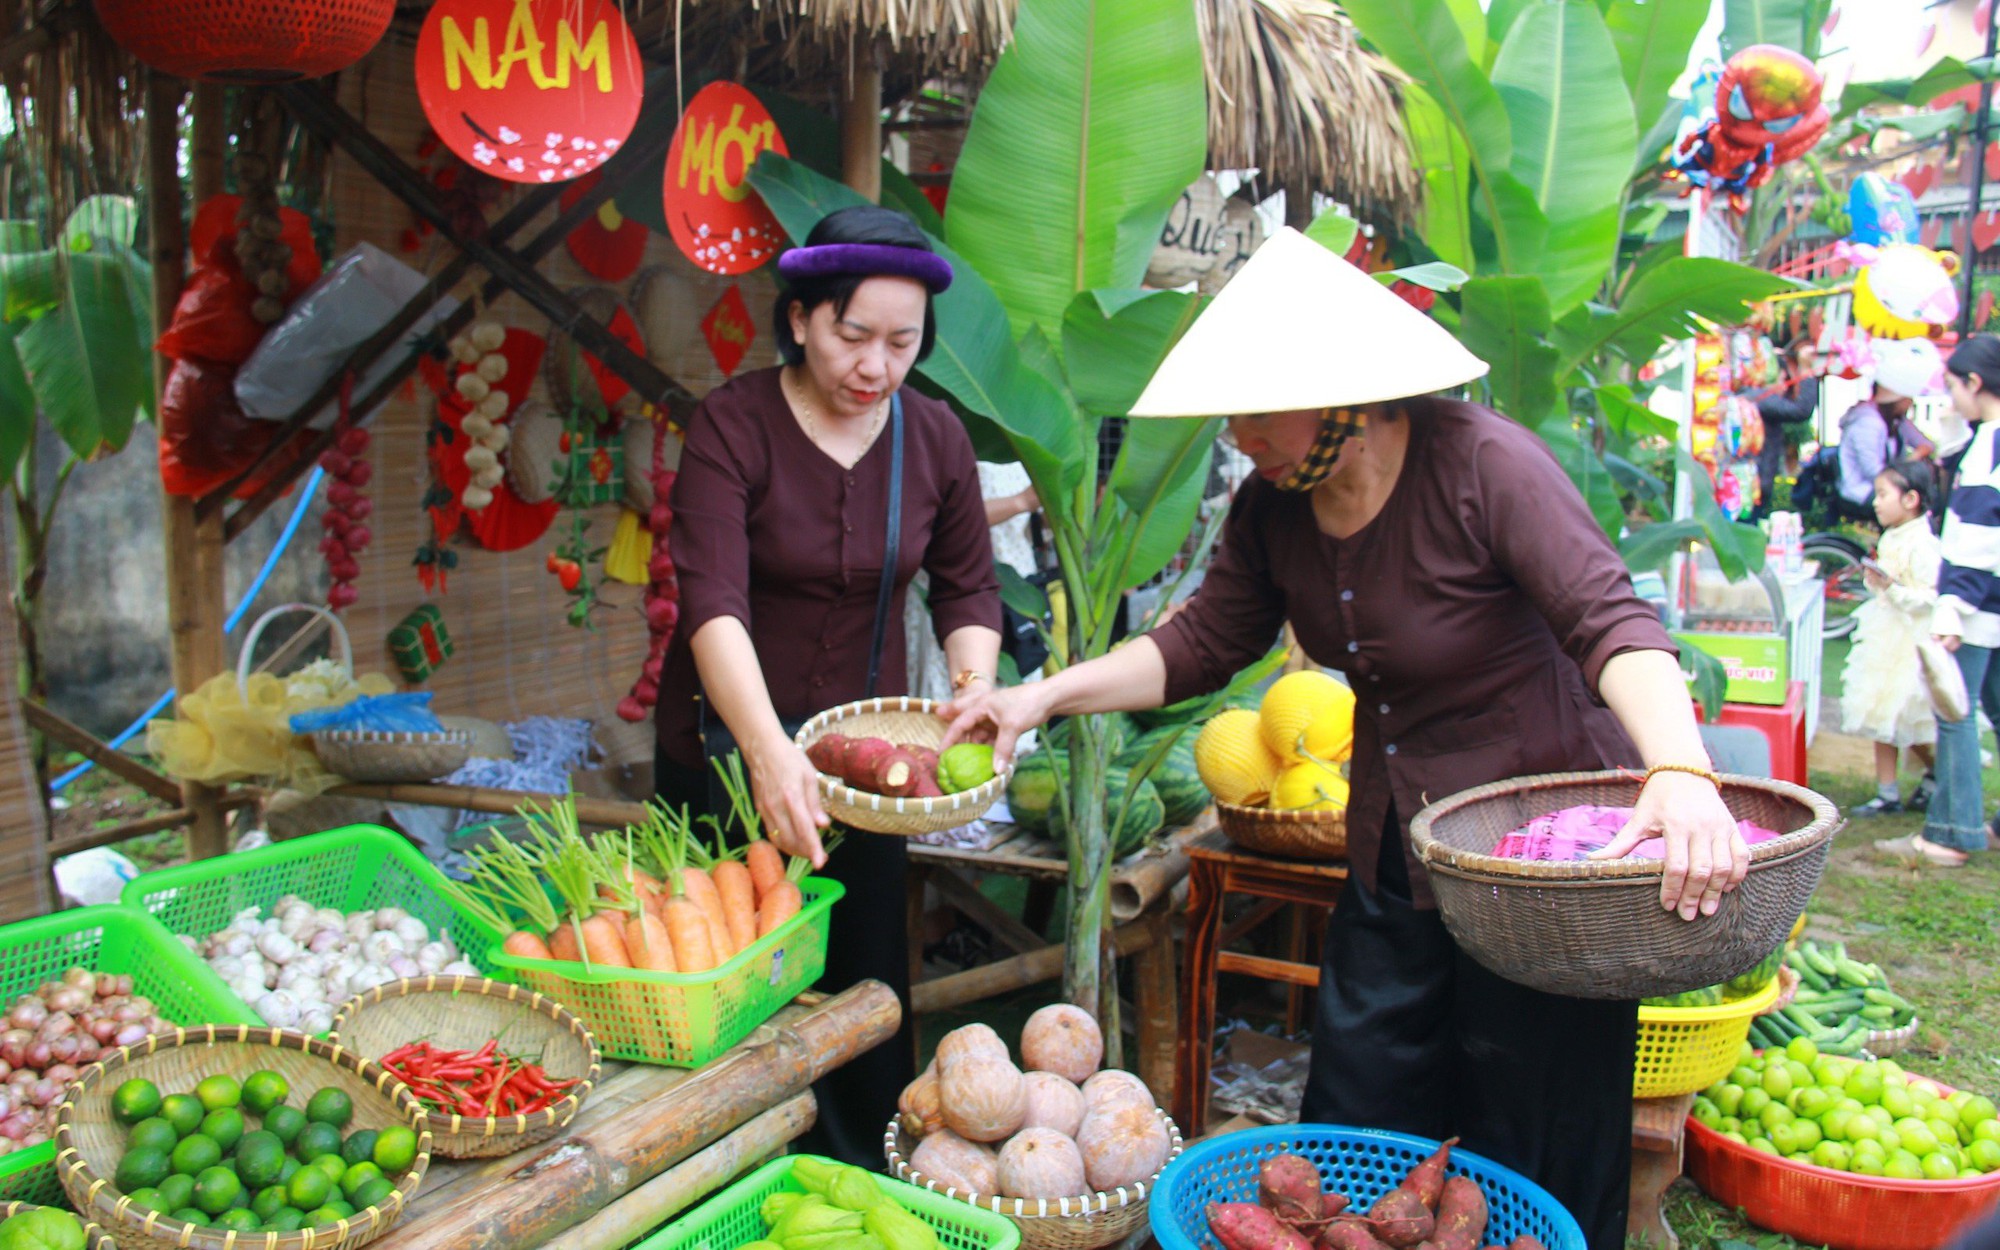 Tái hiện Tết xưa tại một trong những ngôi làng cổ đẹp nhất Việt Nam